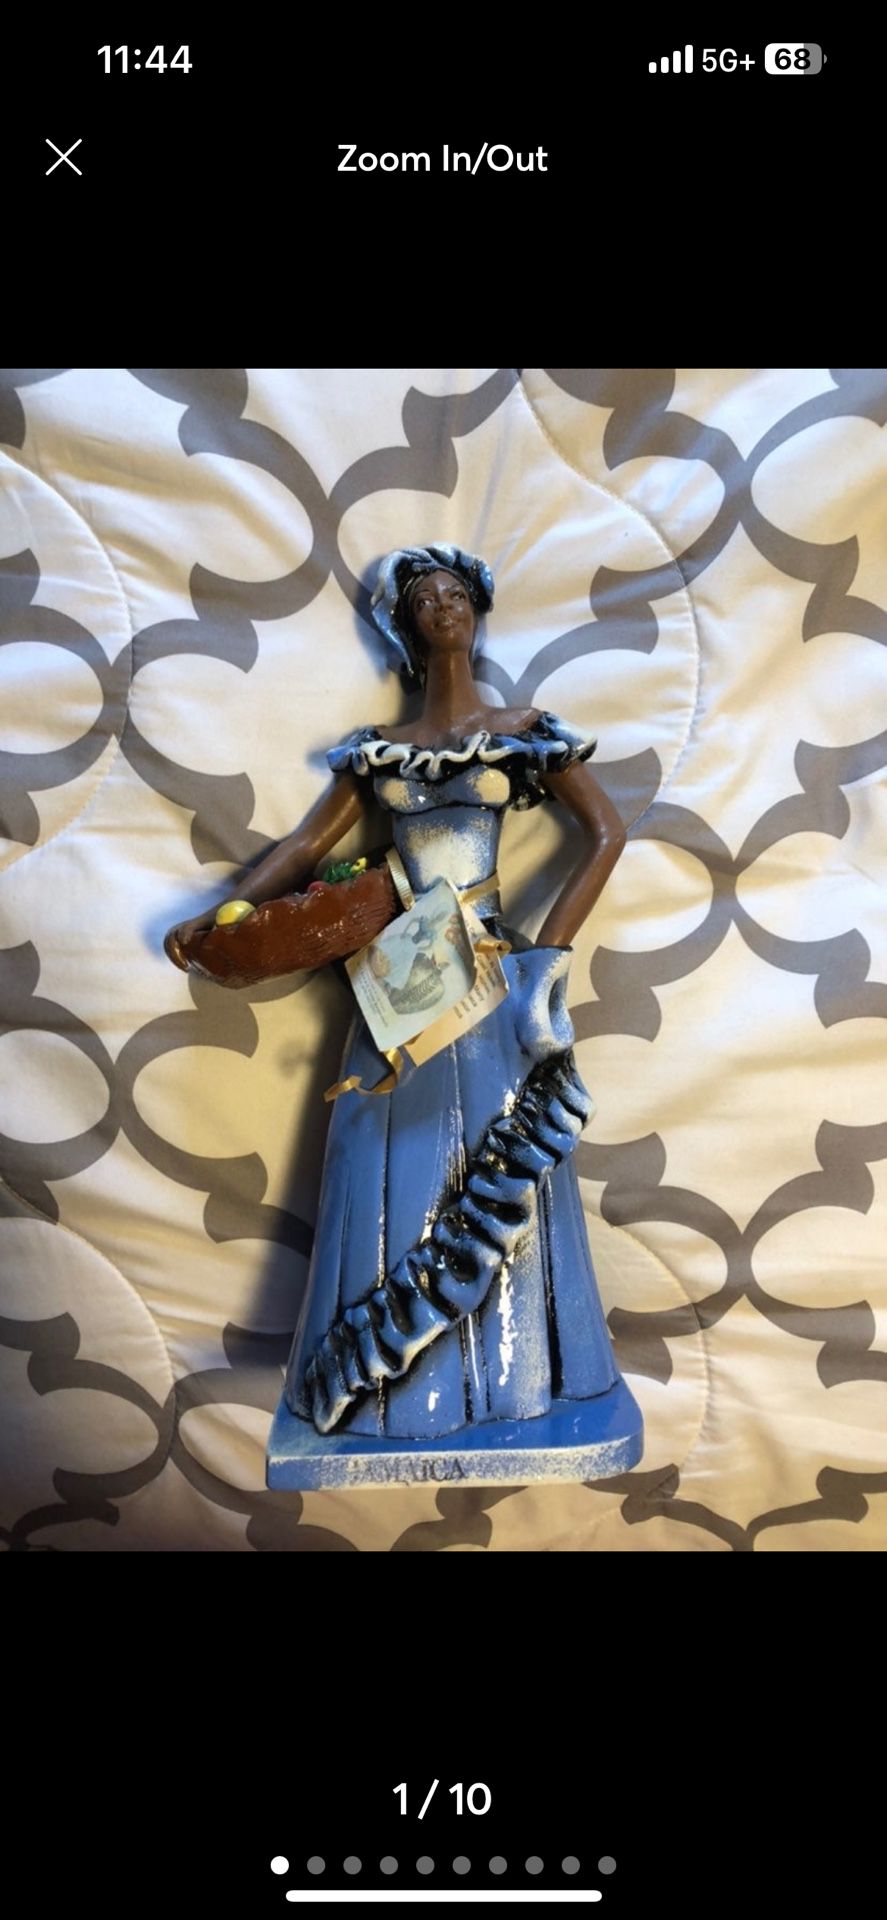 FABULOUS RARE Jamaica Frazer’s Ceramic Jamaican 13”Lady Figurine Statue With Tag $50 Cash Firm 